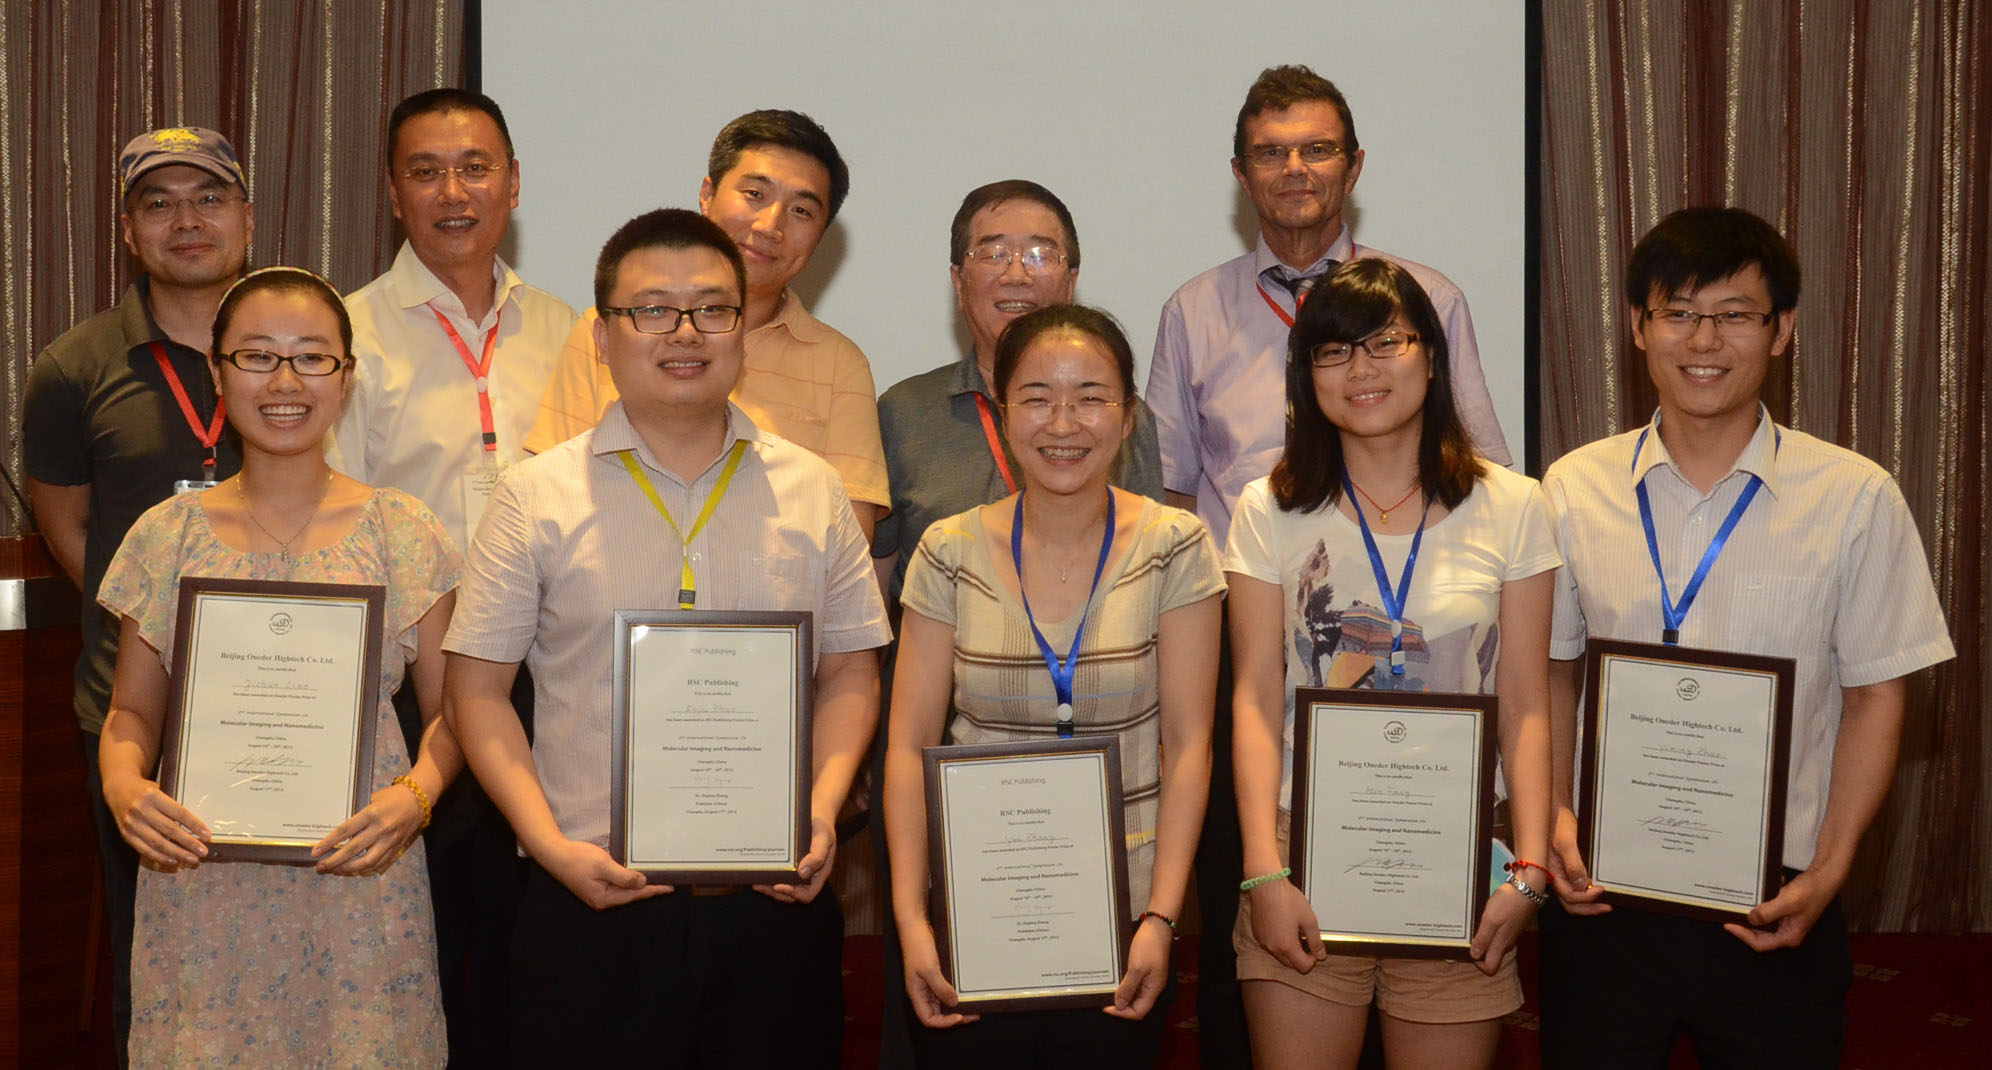 后排从左往右分别是颁奖委员会：Dayang Wang教授、高明远教授、Xiaohu Gao教授、柴之芳院士和Hans-Joachim Galla教授。